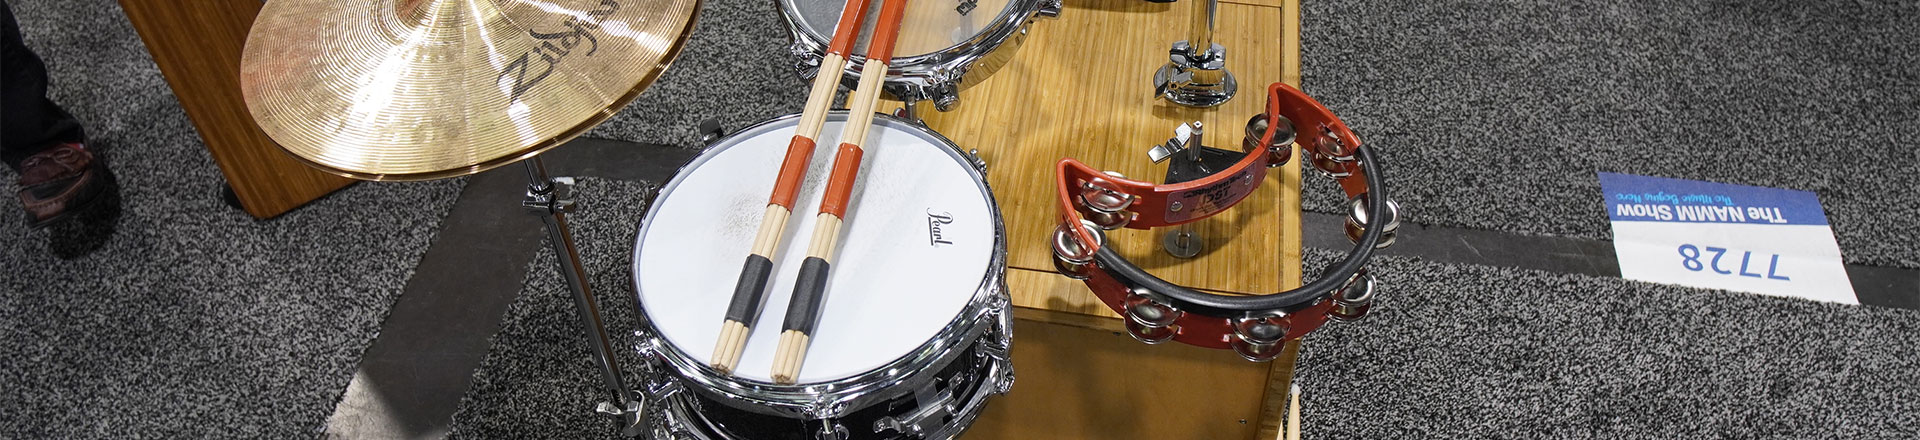 Drummers Dream Kit, czyli mały może więcej